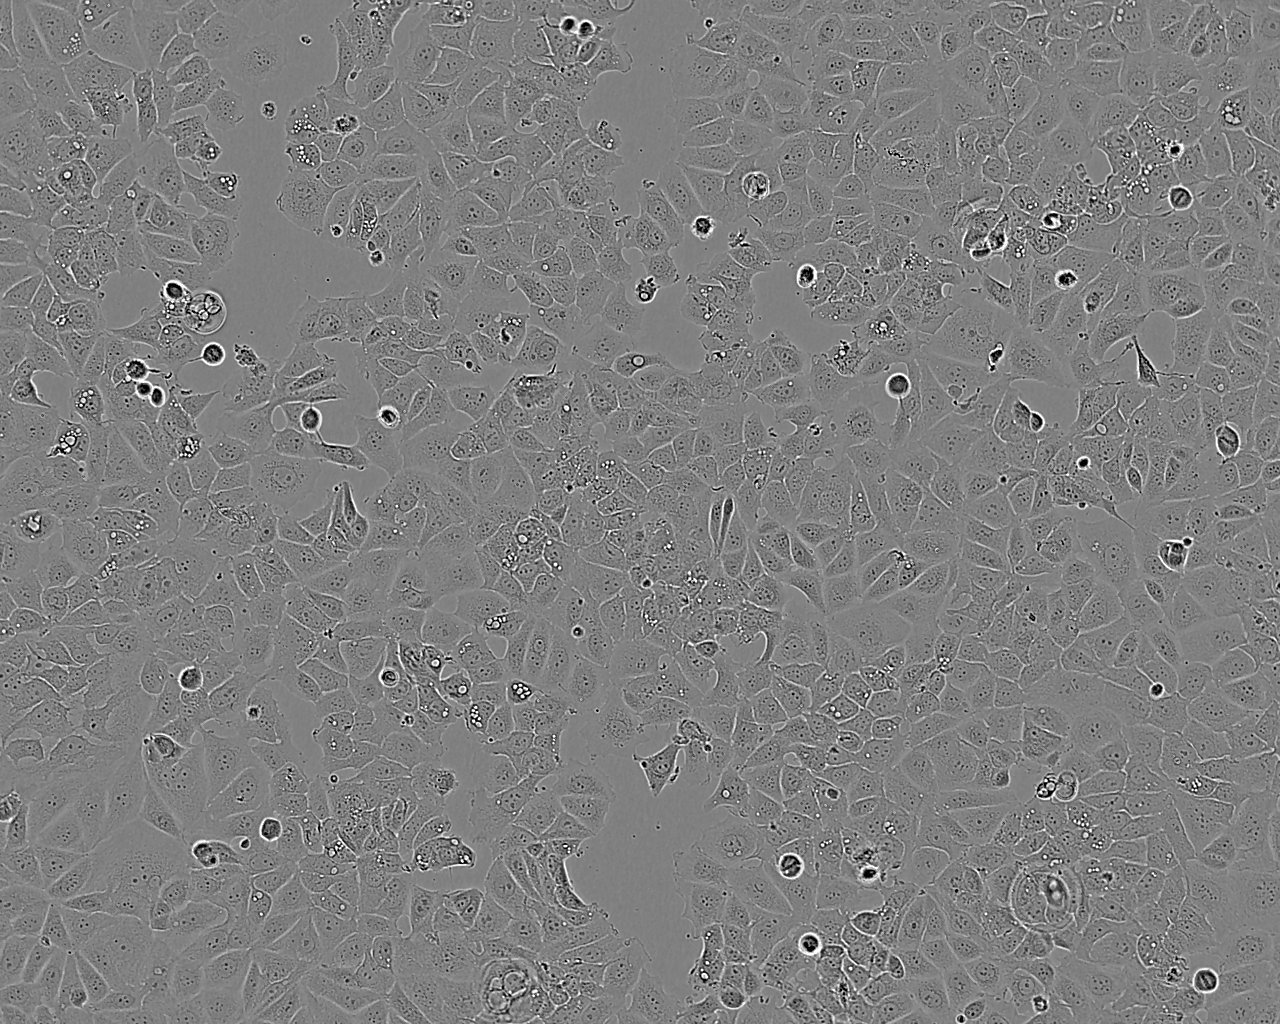 SCC7 小鼠鳞状细胞癌细胞系